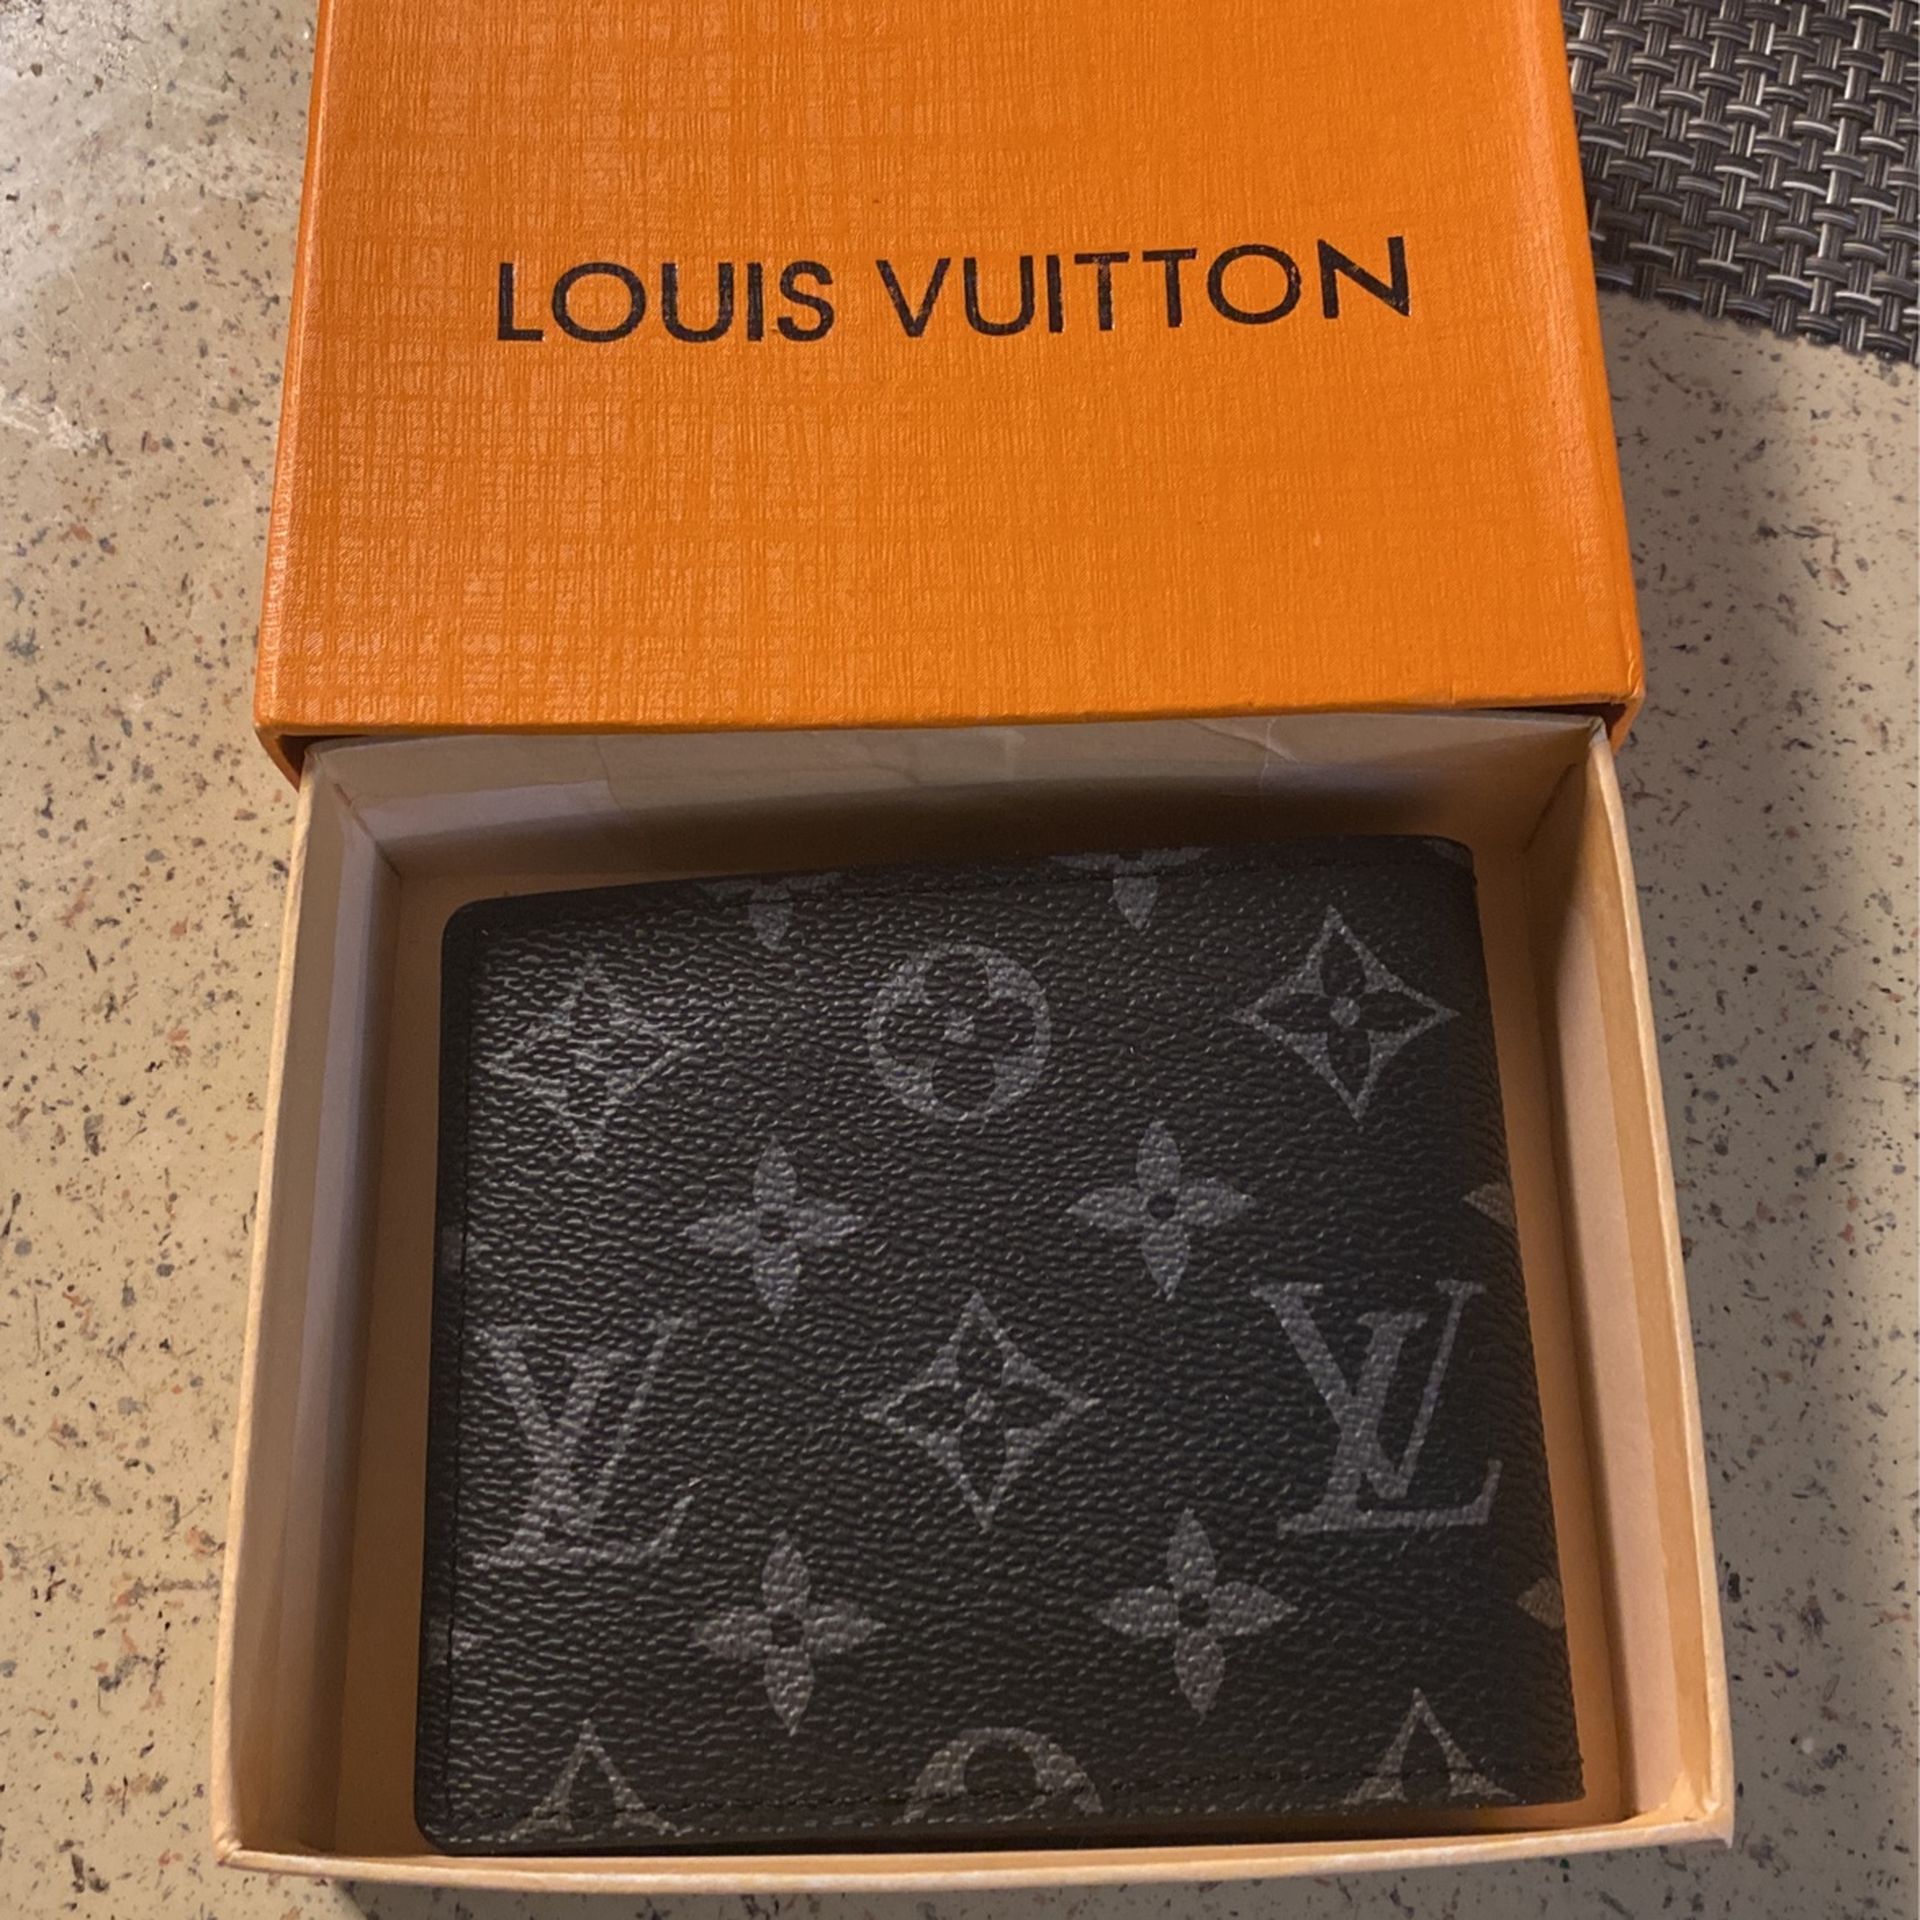 Louis Vuitton Multiple Wallet for Sale in Kerman, CA - OfferUp